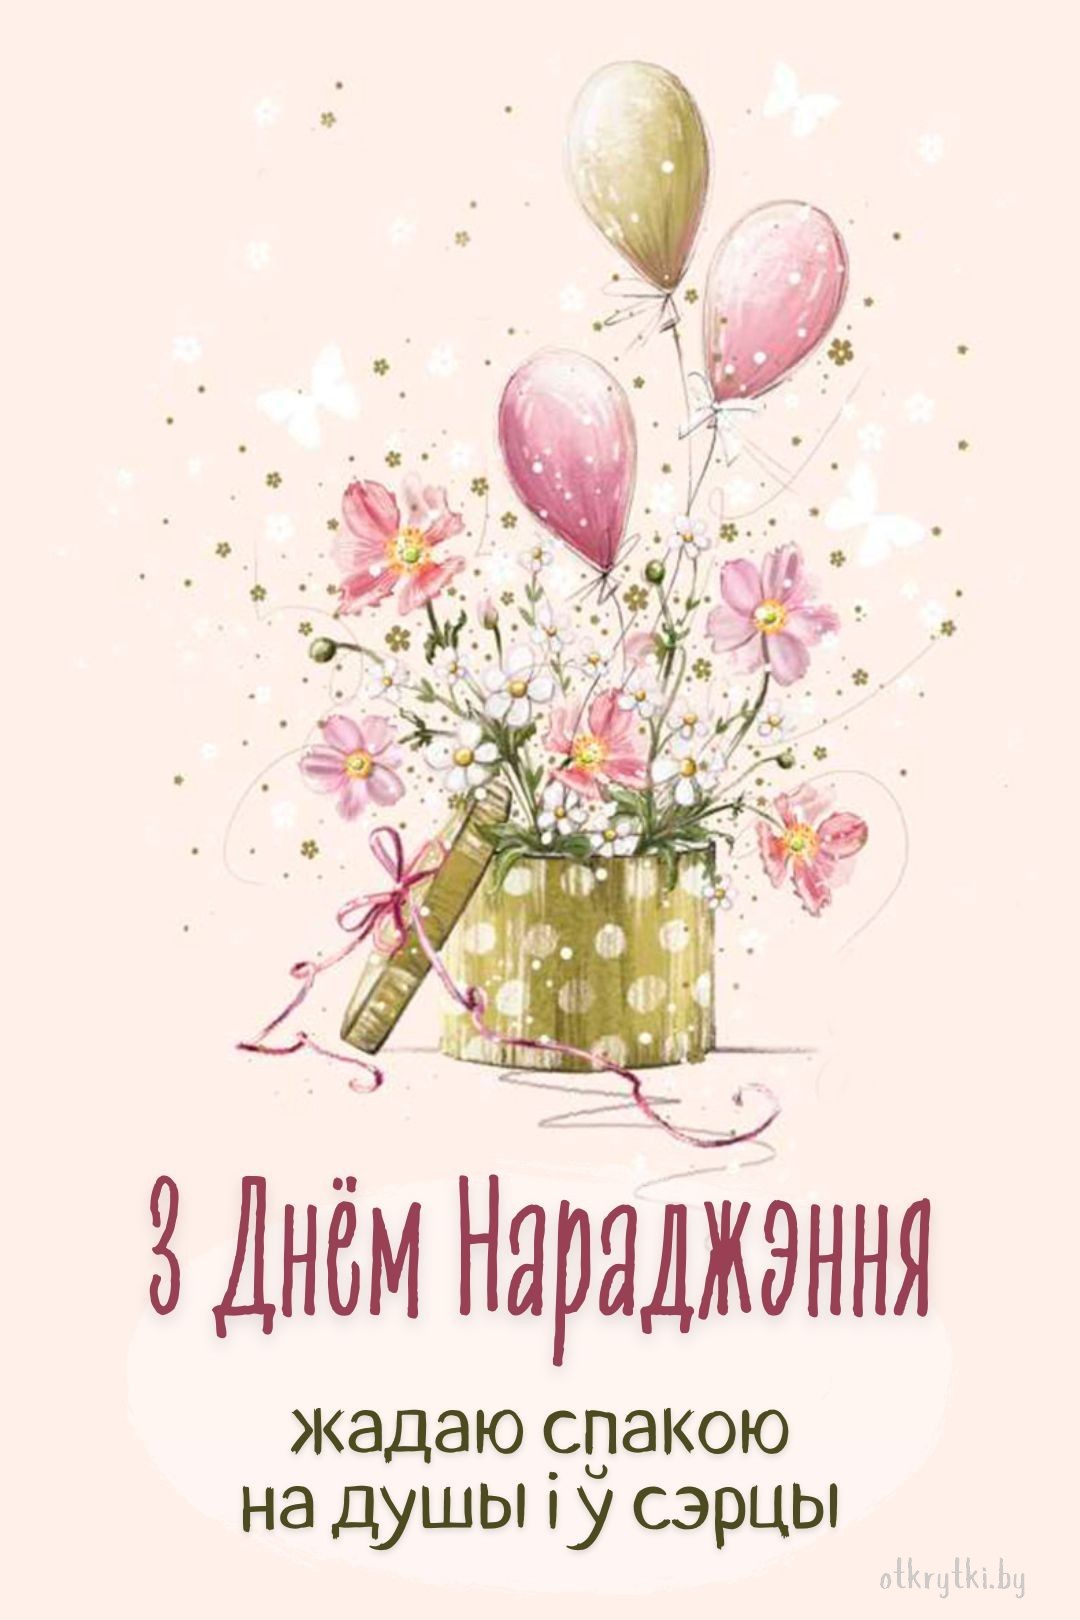 Красивая картинка с днем рождения на белорусском языке